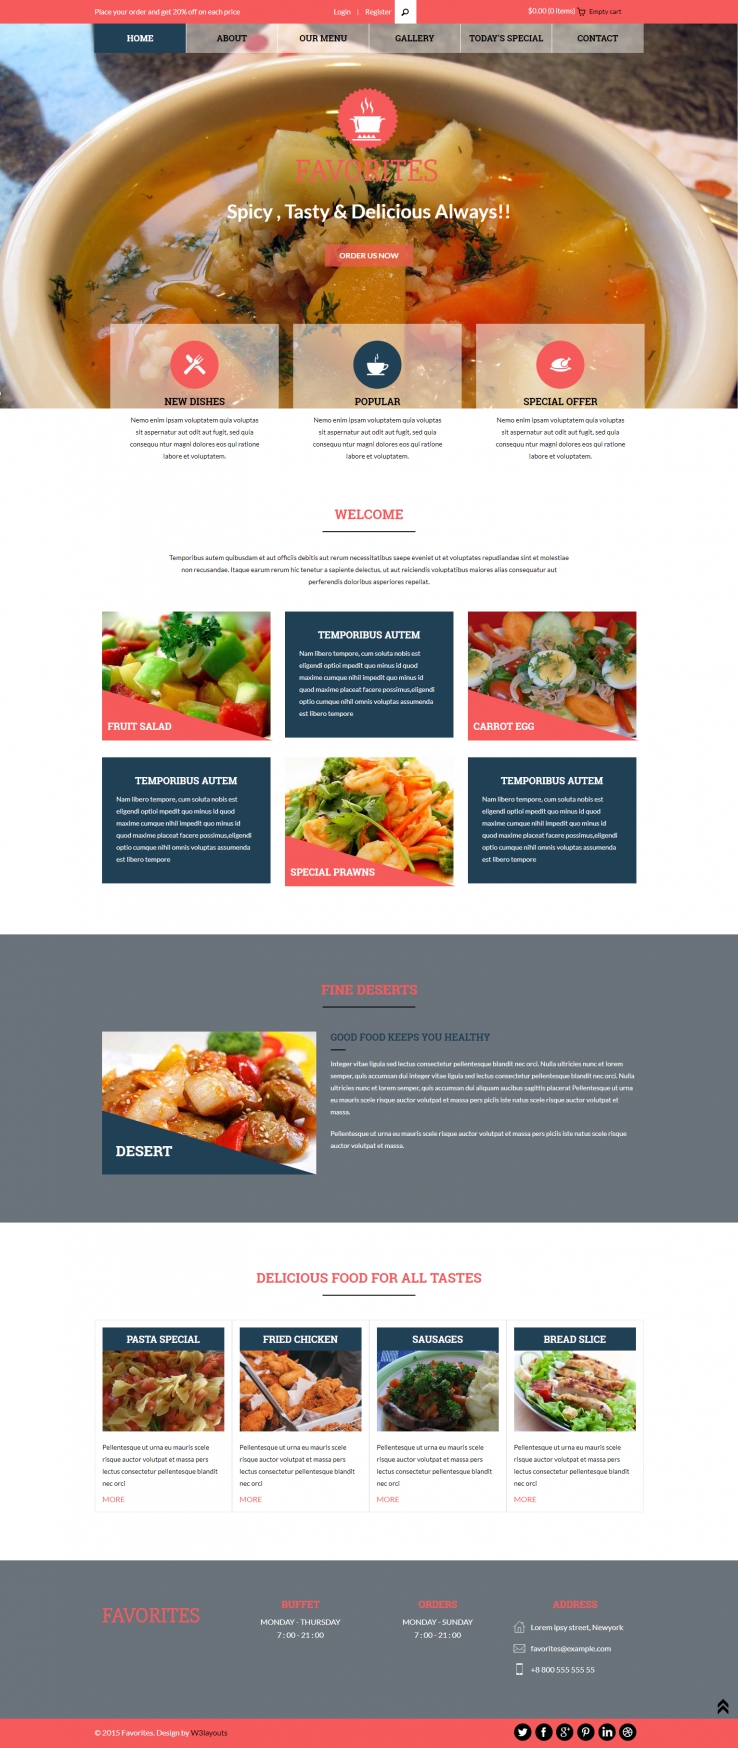 蓝色简洁风格的超级美食餐厅整站网站源码下载